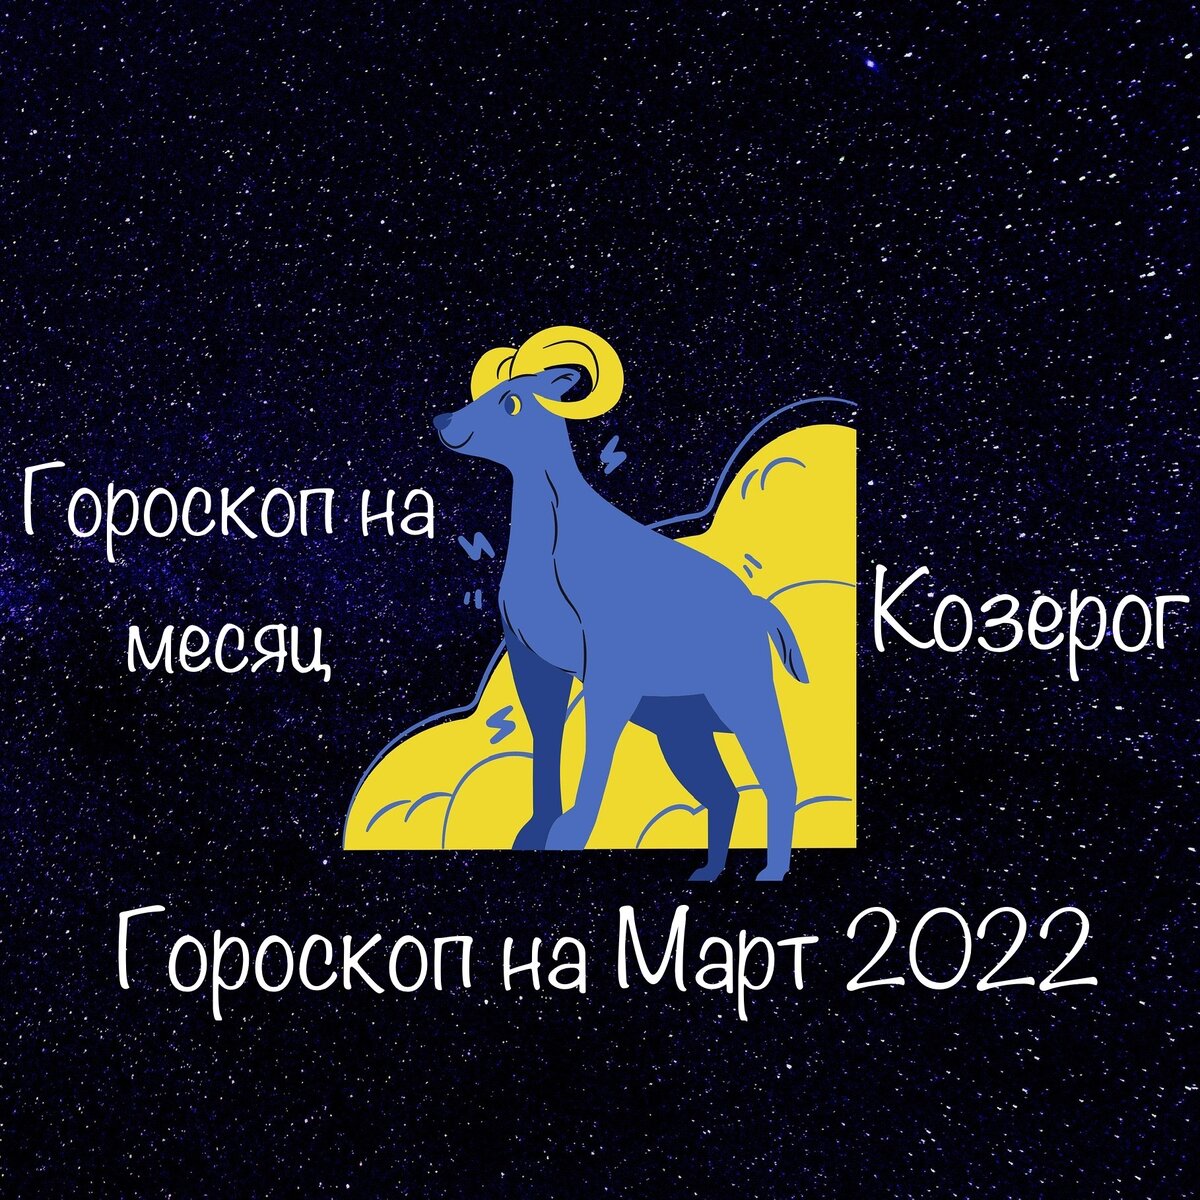 Астрологический прогноз козерог на 2024